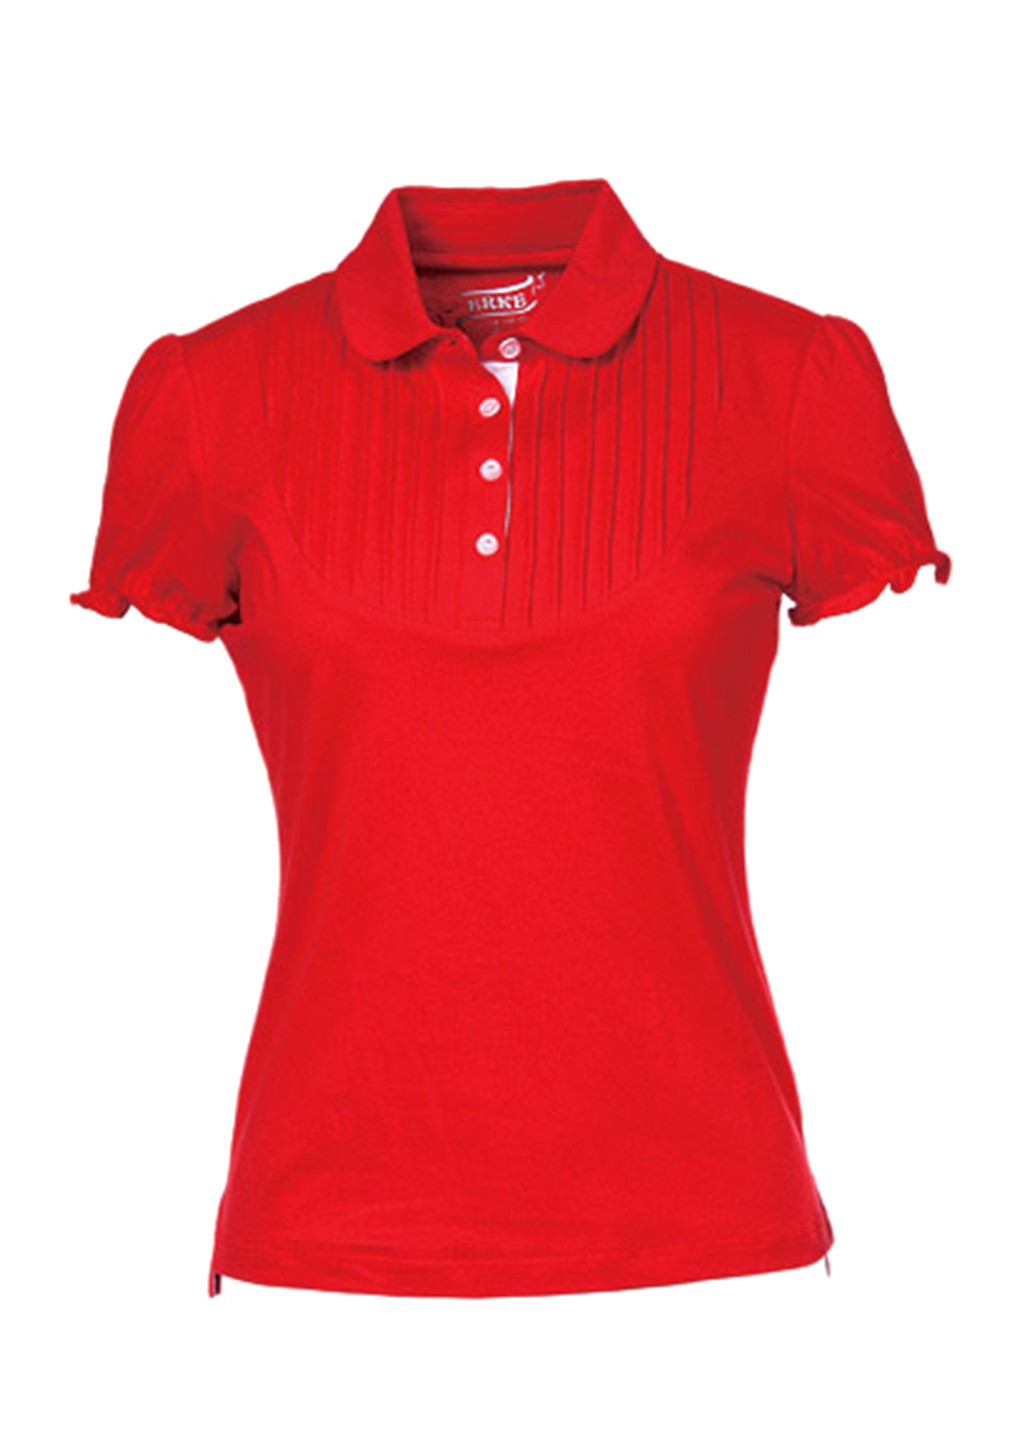 Красная женская футболка-поло Erke однотонная